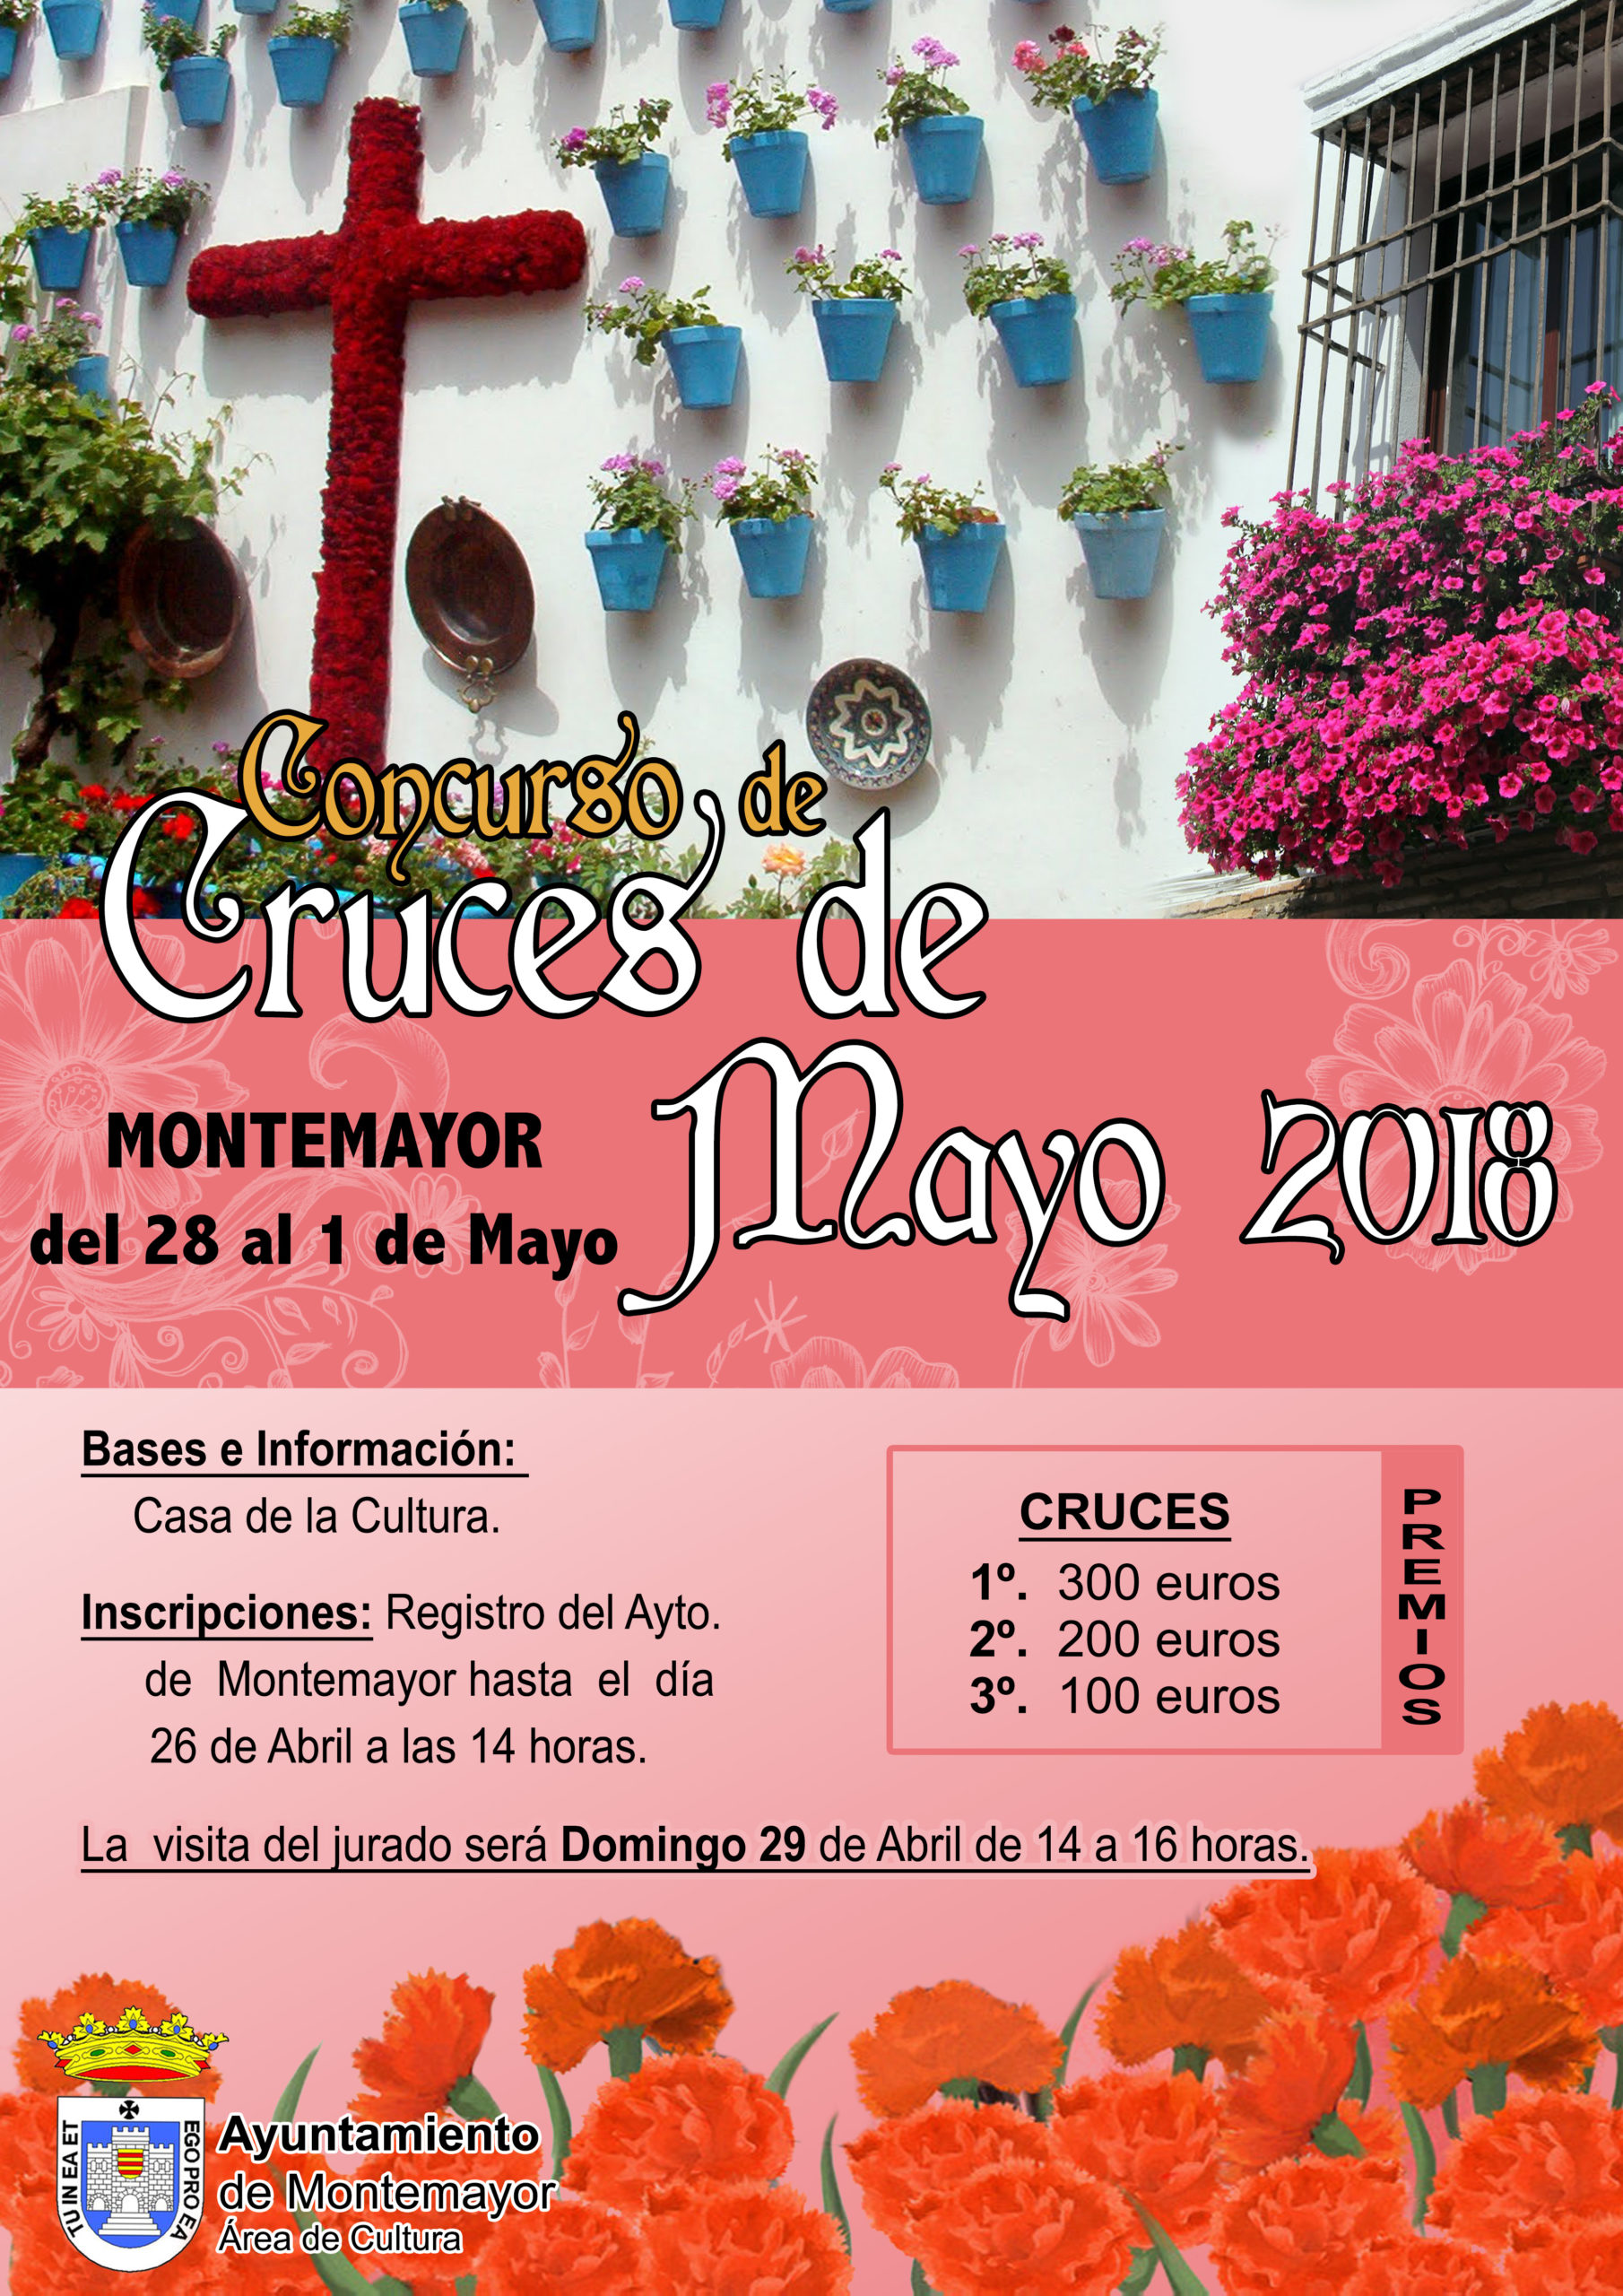 Concurso de Cruces de Mayo 2018 1